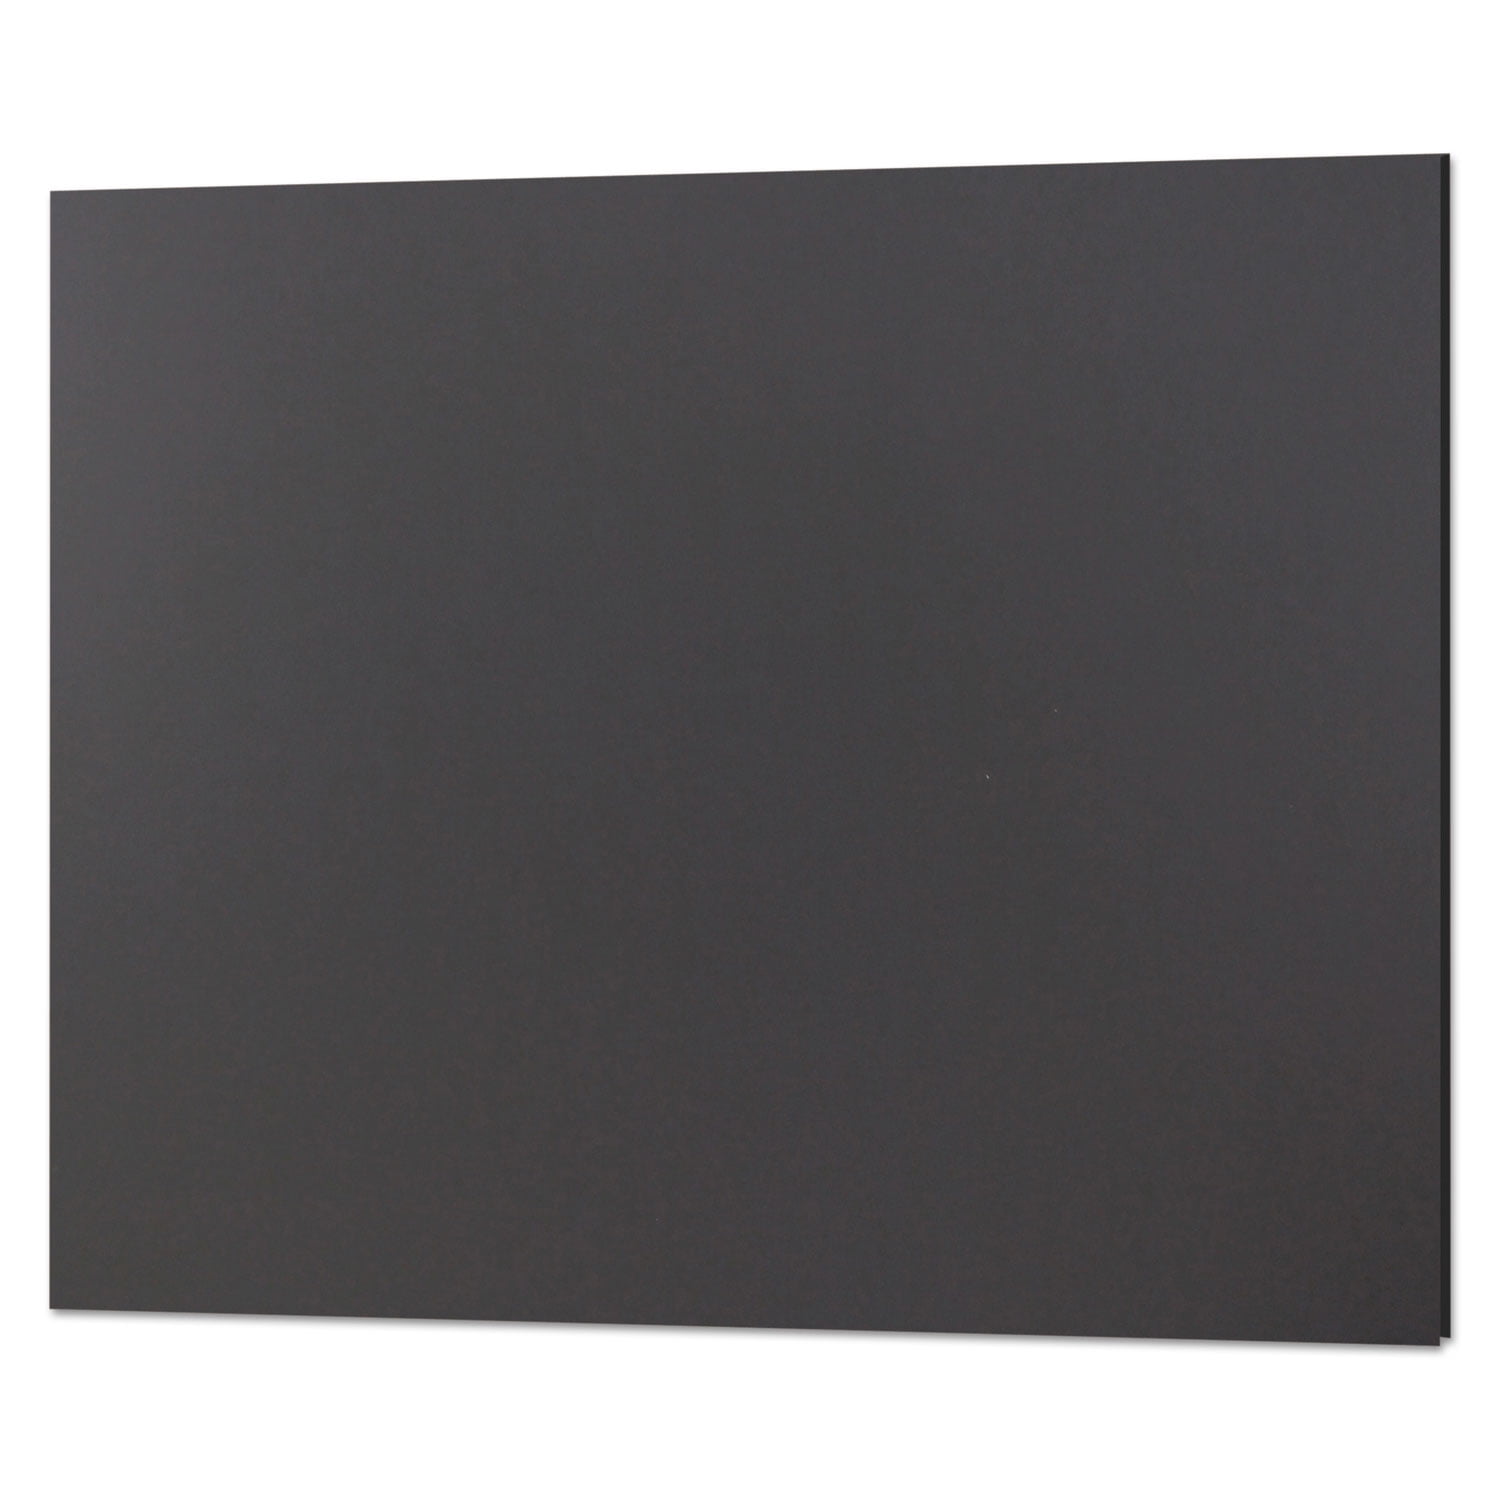 Pro Foam Board - Black, 20 x 30 x 1/2, 10 Pack